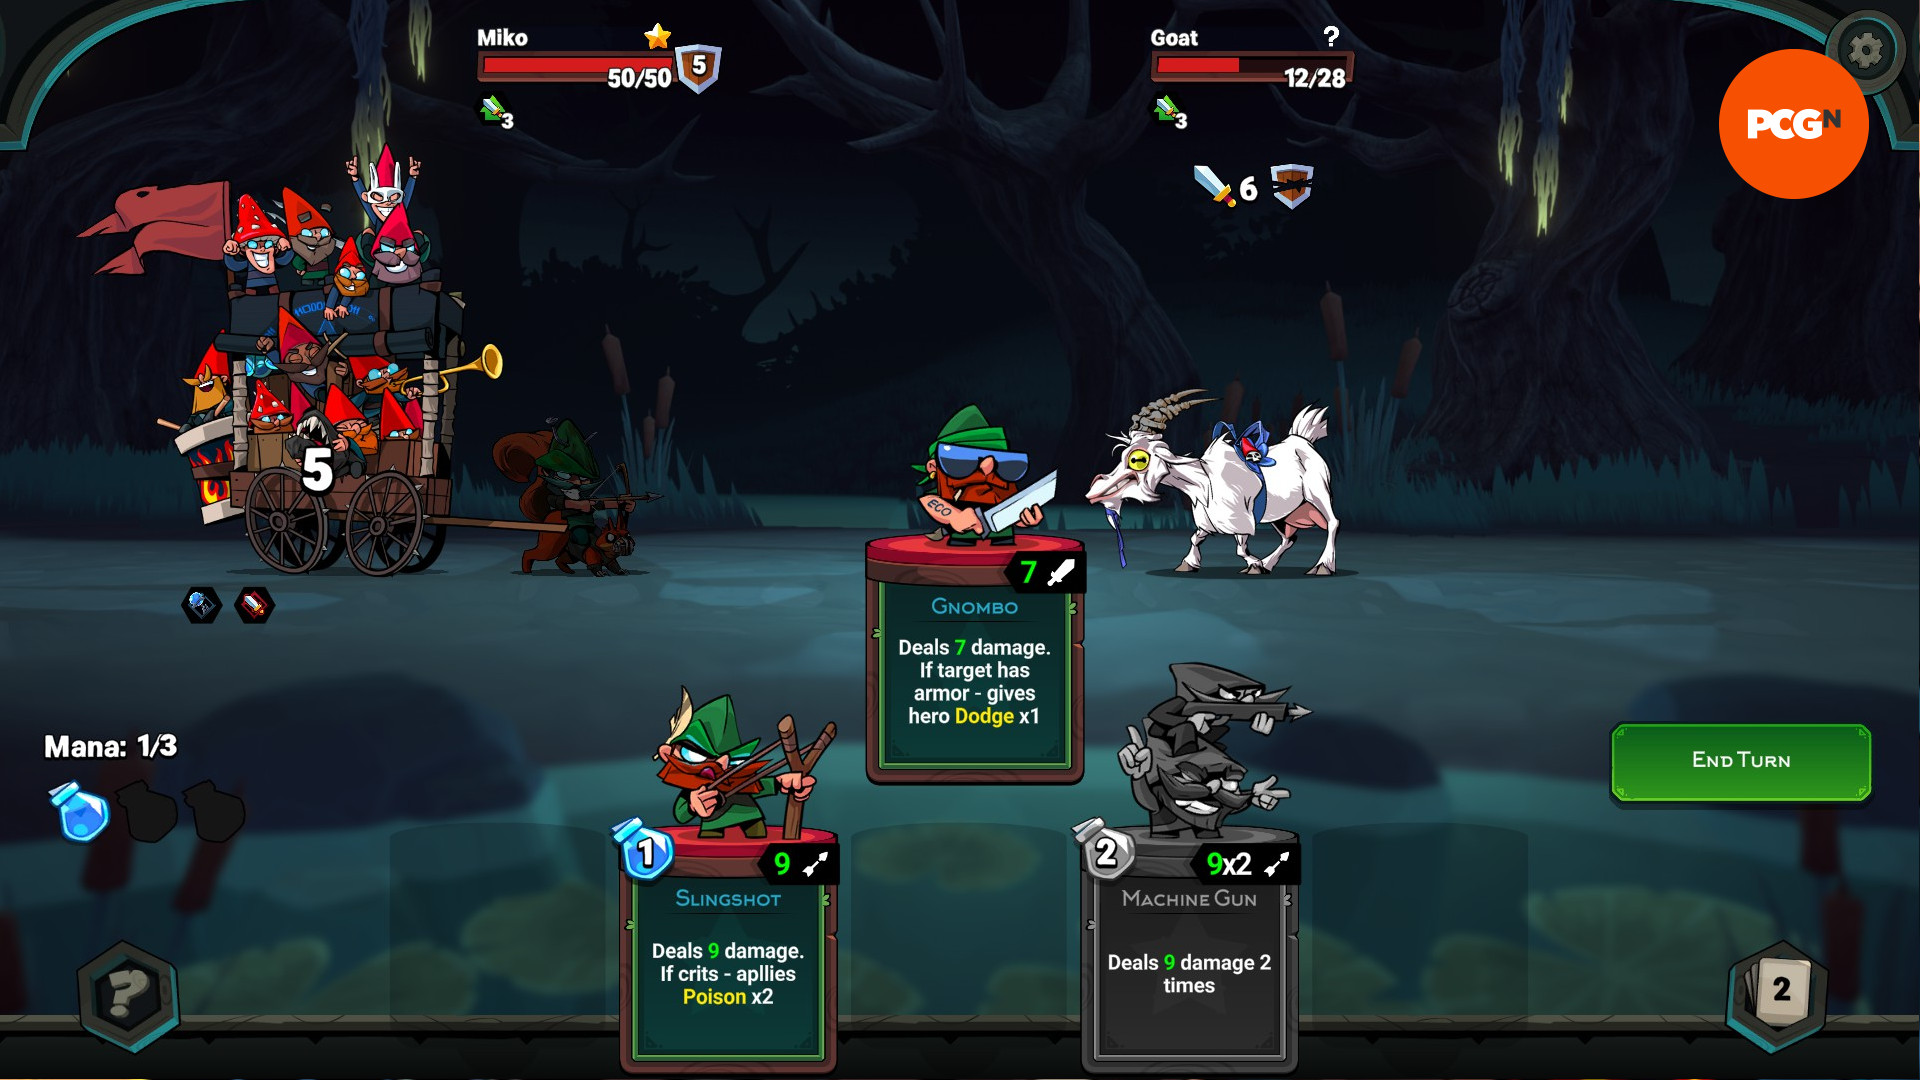 Union of Gnomes: una captura de pantalla de la batalla en el creador de mazos roguelike, donde se usa una carta 'Gnombo' para realizar un ataque.